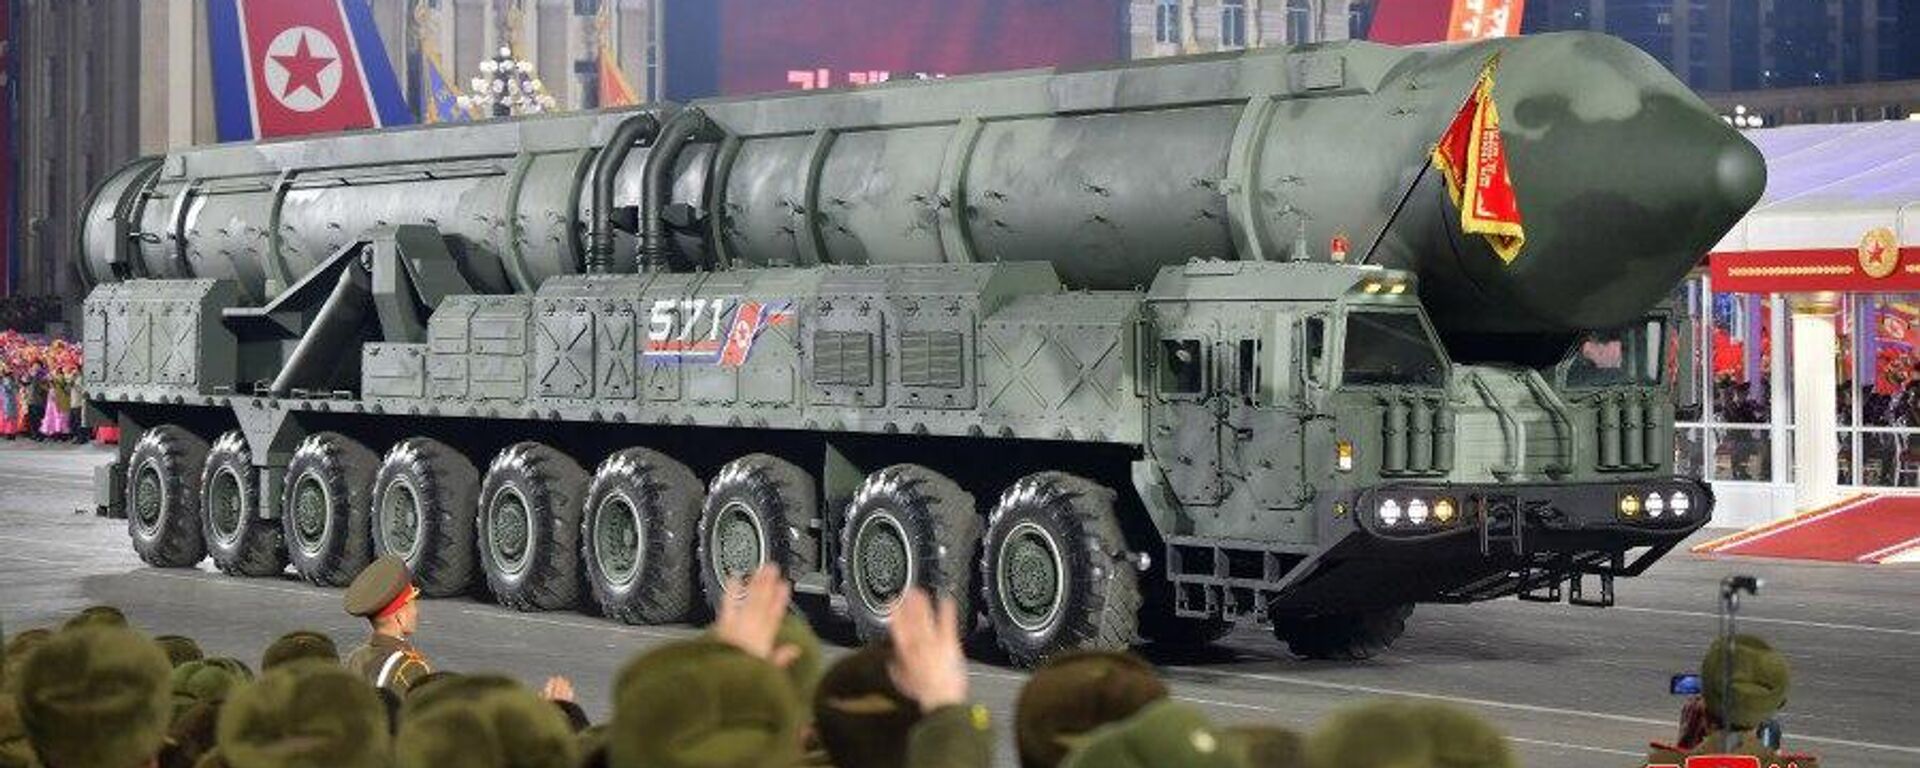 Coreia do Norte comemora 75 anos de seu Exército e mostra possível novo míssil intercontinental durante um grande desfile militar na capital norte-coreana, Pyongyang, em 8 de fevereiro - Sputnik Brasil, 1920, 09.02.2023